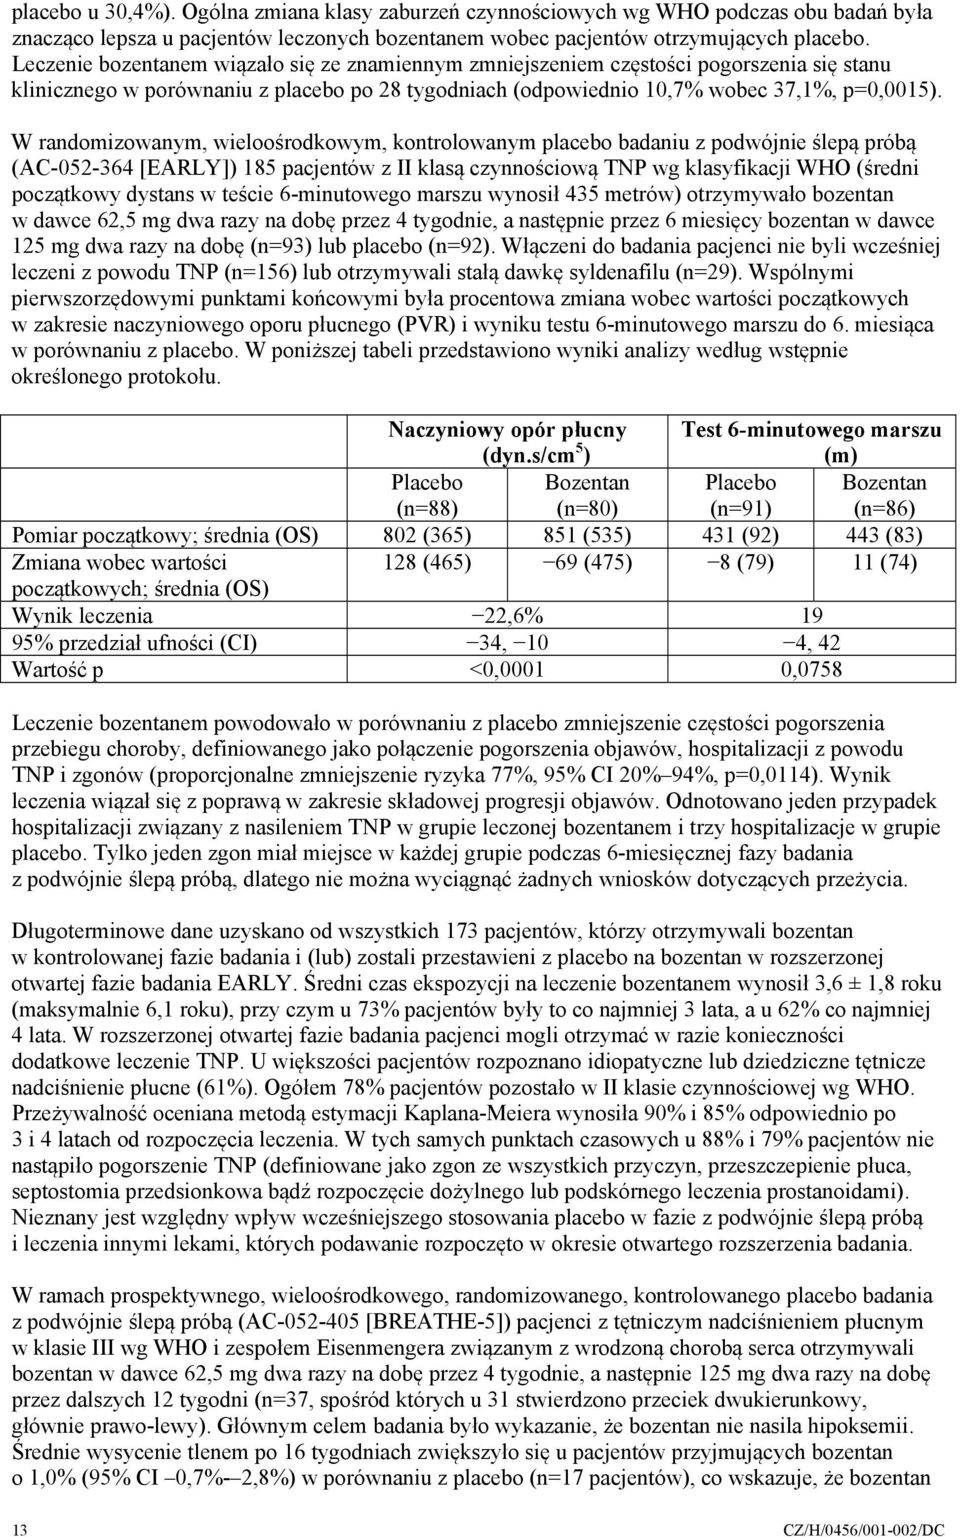 W randomizowanym, wieloośrodkowym, kontrolowanym placebo badaniu z podwójnie ślepą próbą (AC-052-364 [EARLY]) 185 pacjentów z II klasą czynnościową TNP wg klasyfikacji WHO (średni początkowy dystans